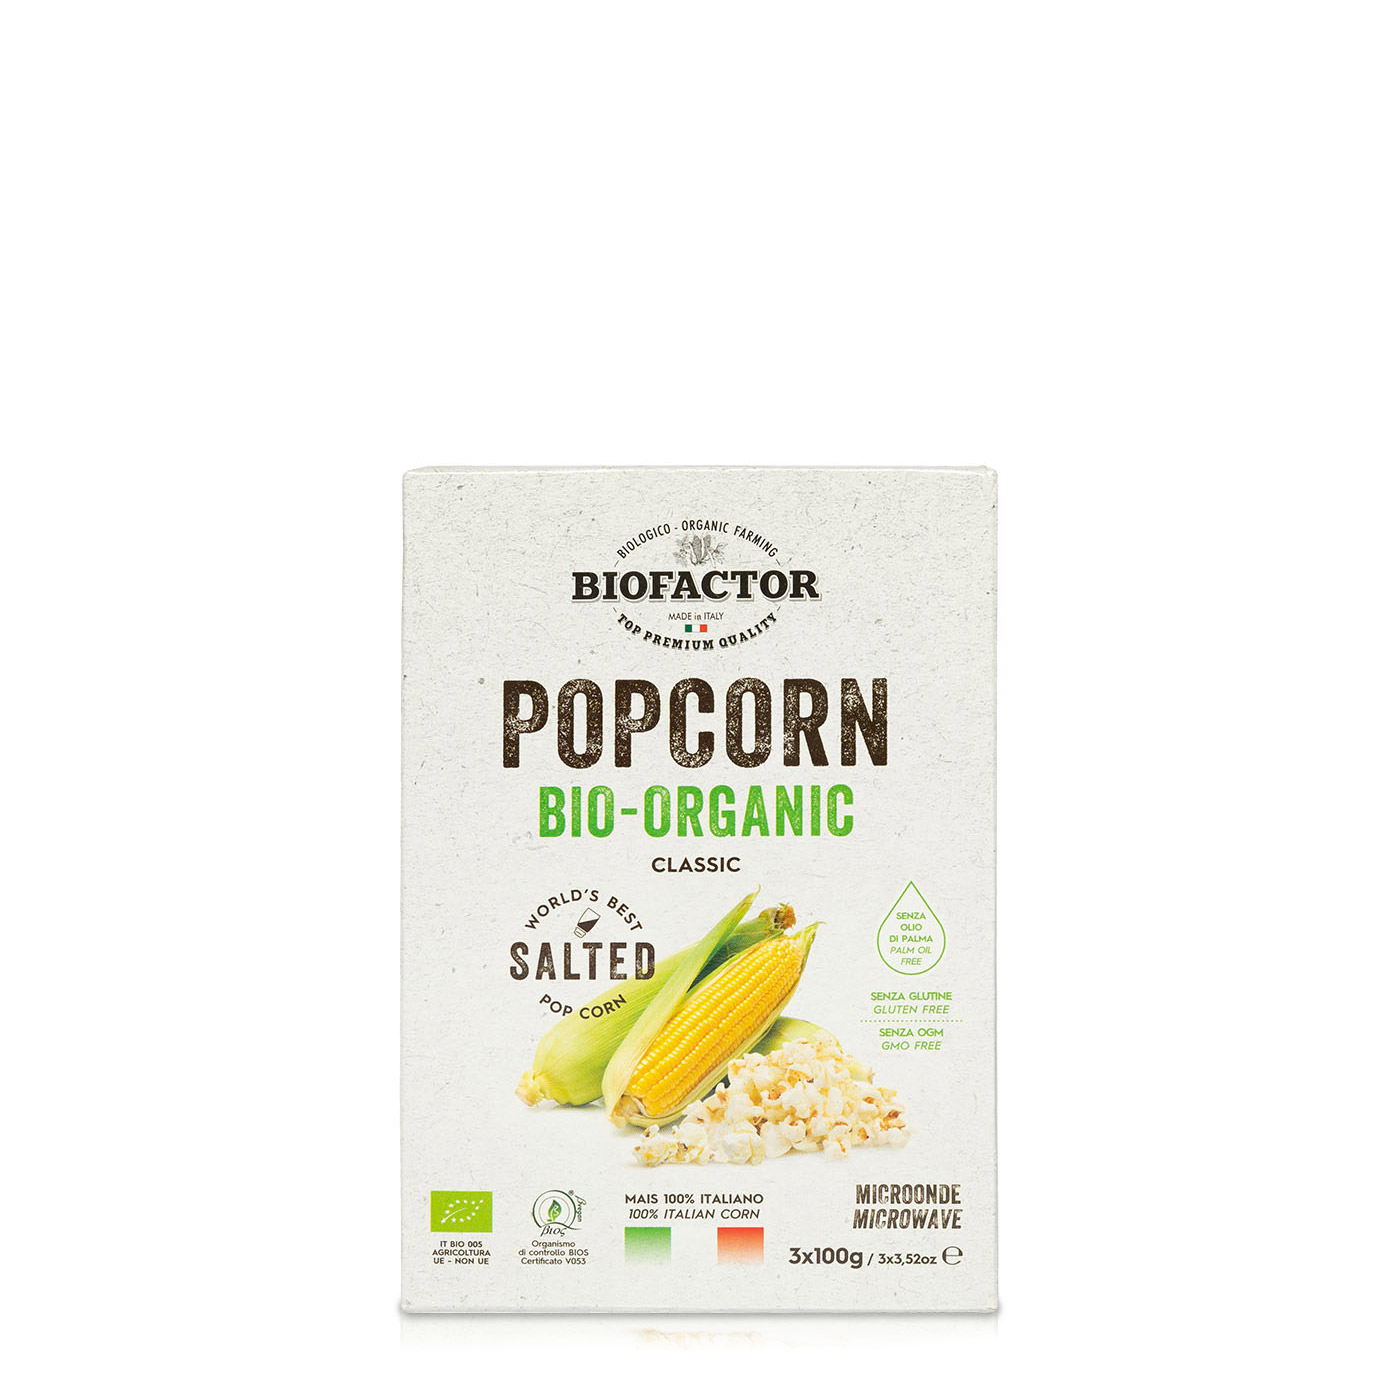 Popcorn – Biofactor